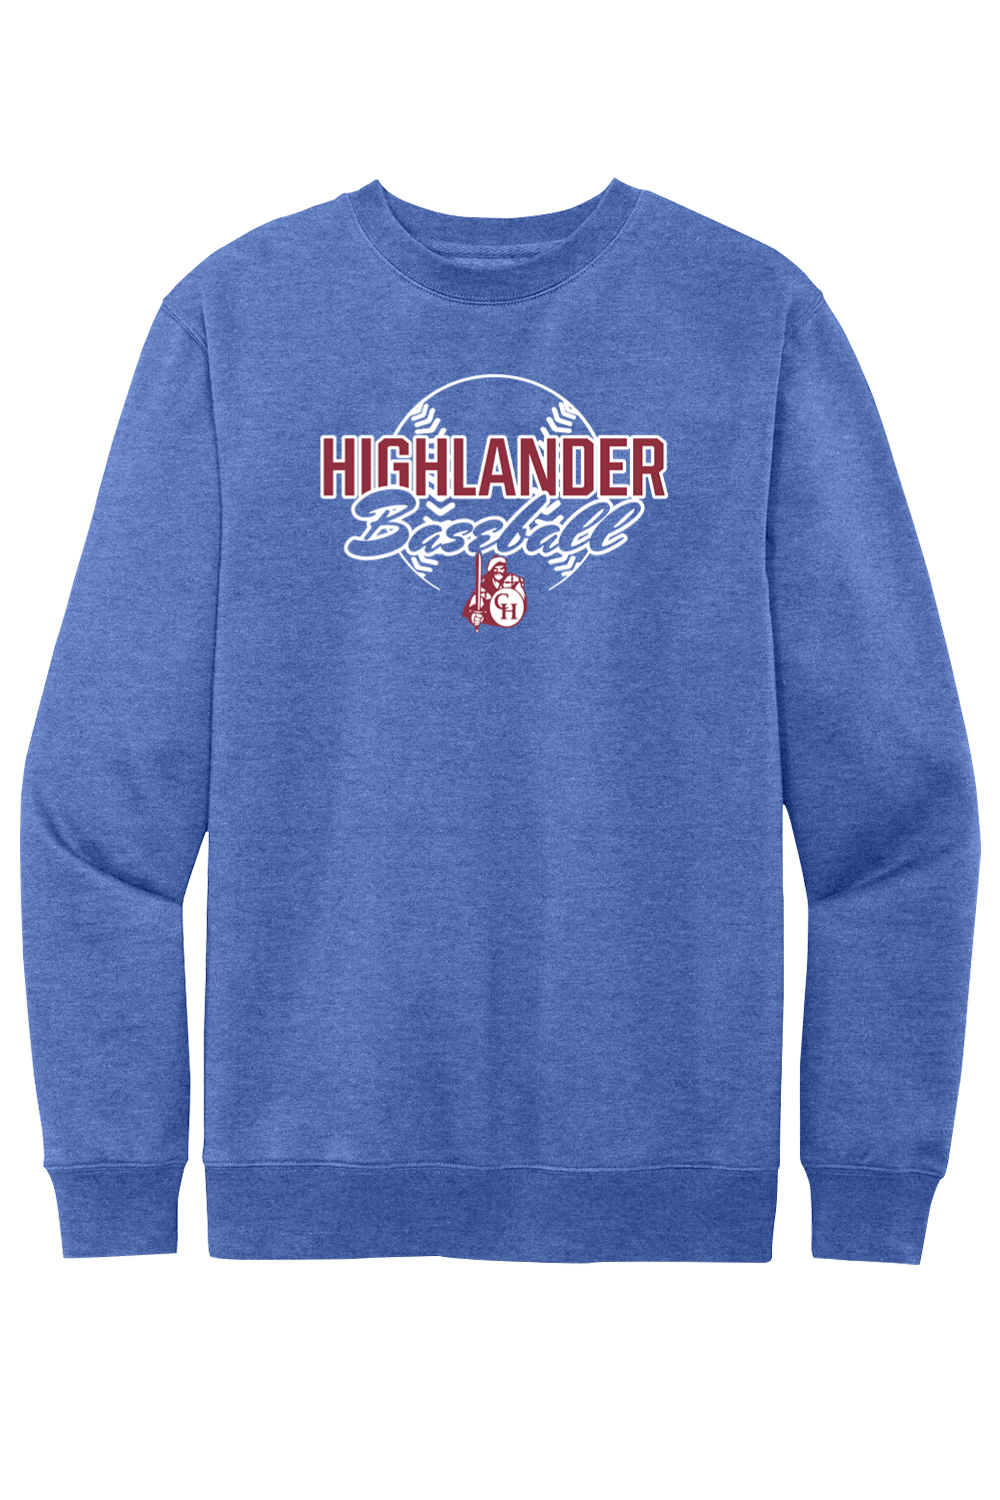 Highlander Baseball - Fleece Crewneck Sweatshirt - Yinzylvania